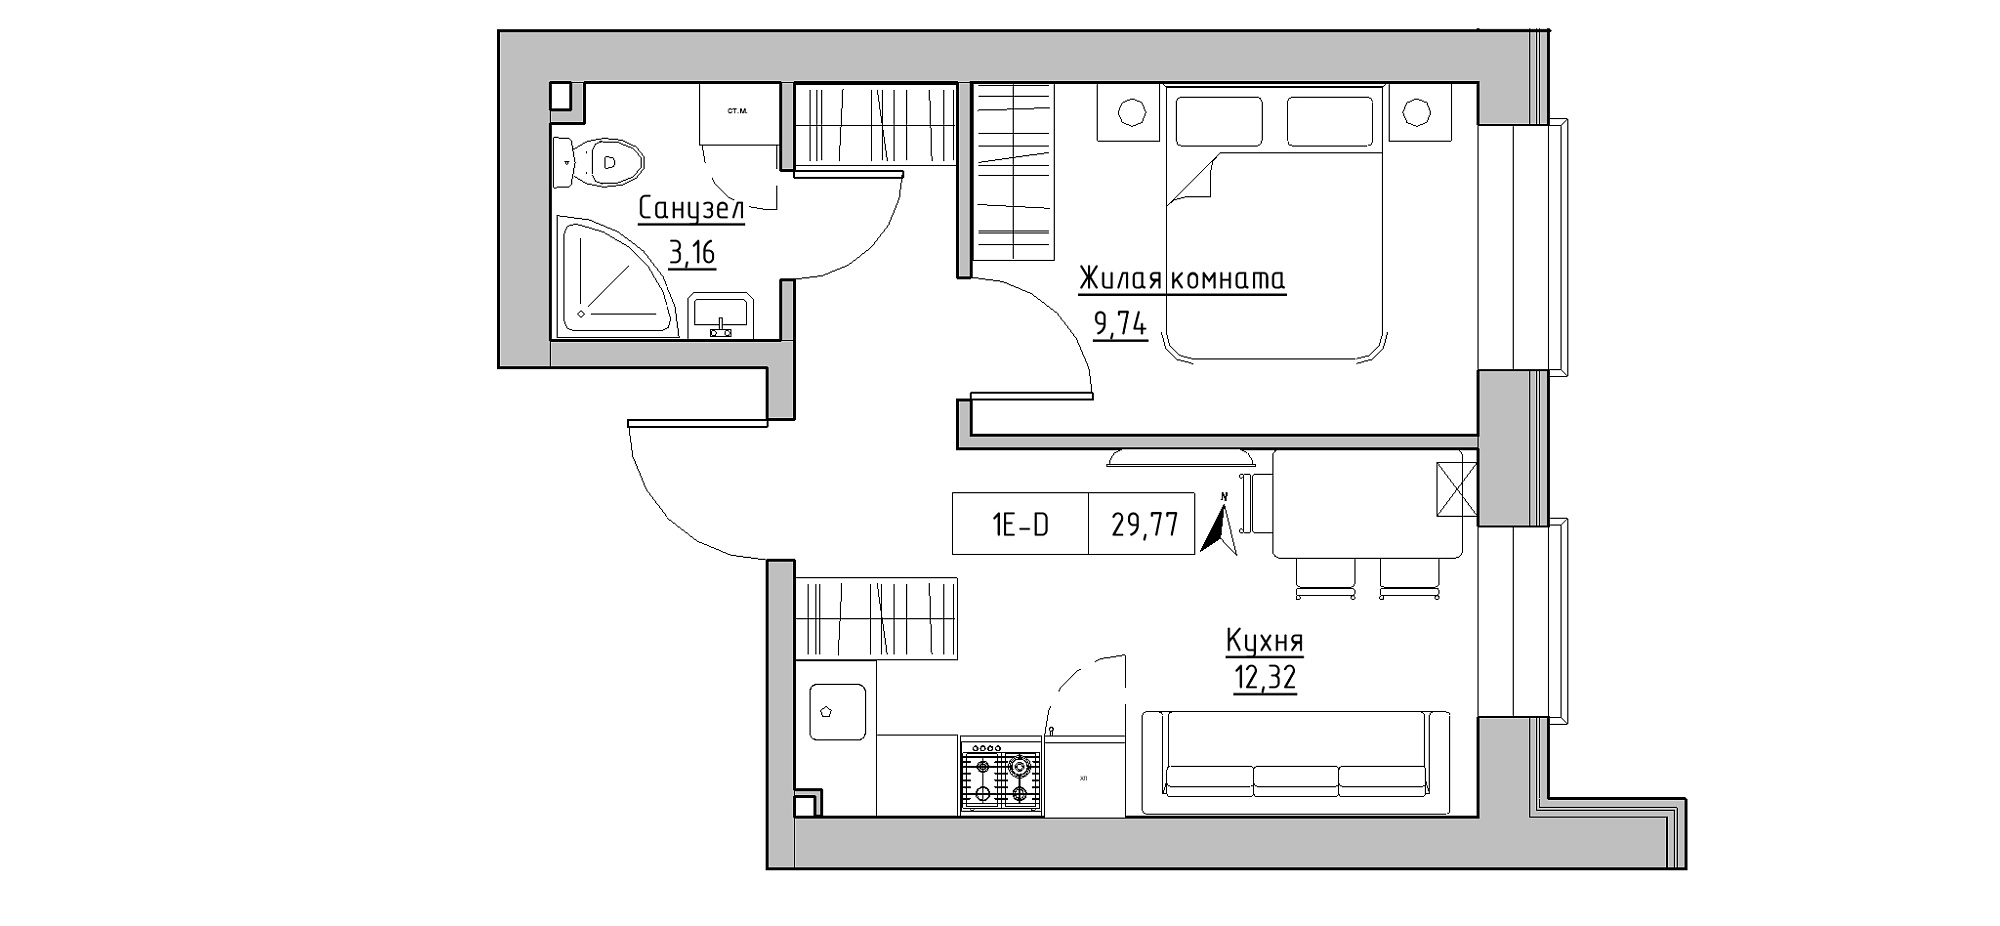 Планування 1-к квартира площею 29.77м2, KS-020-01/0013.